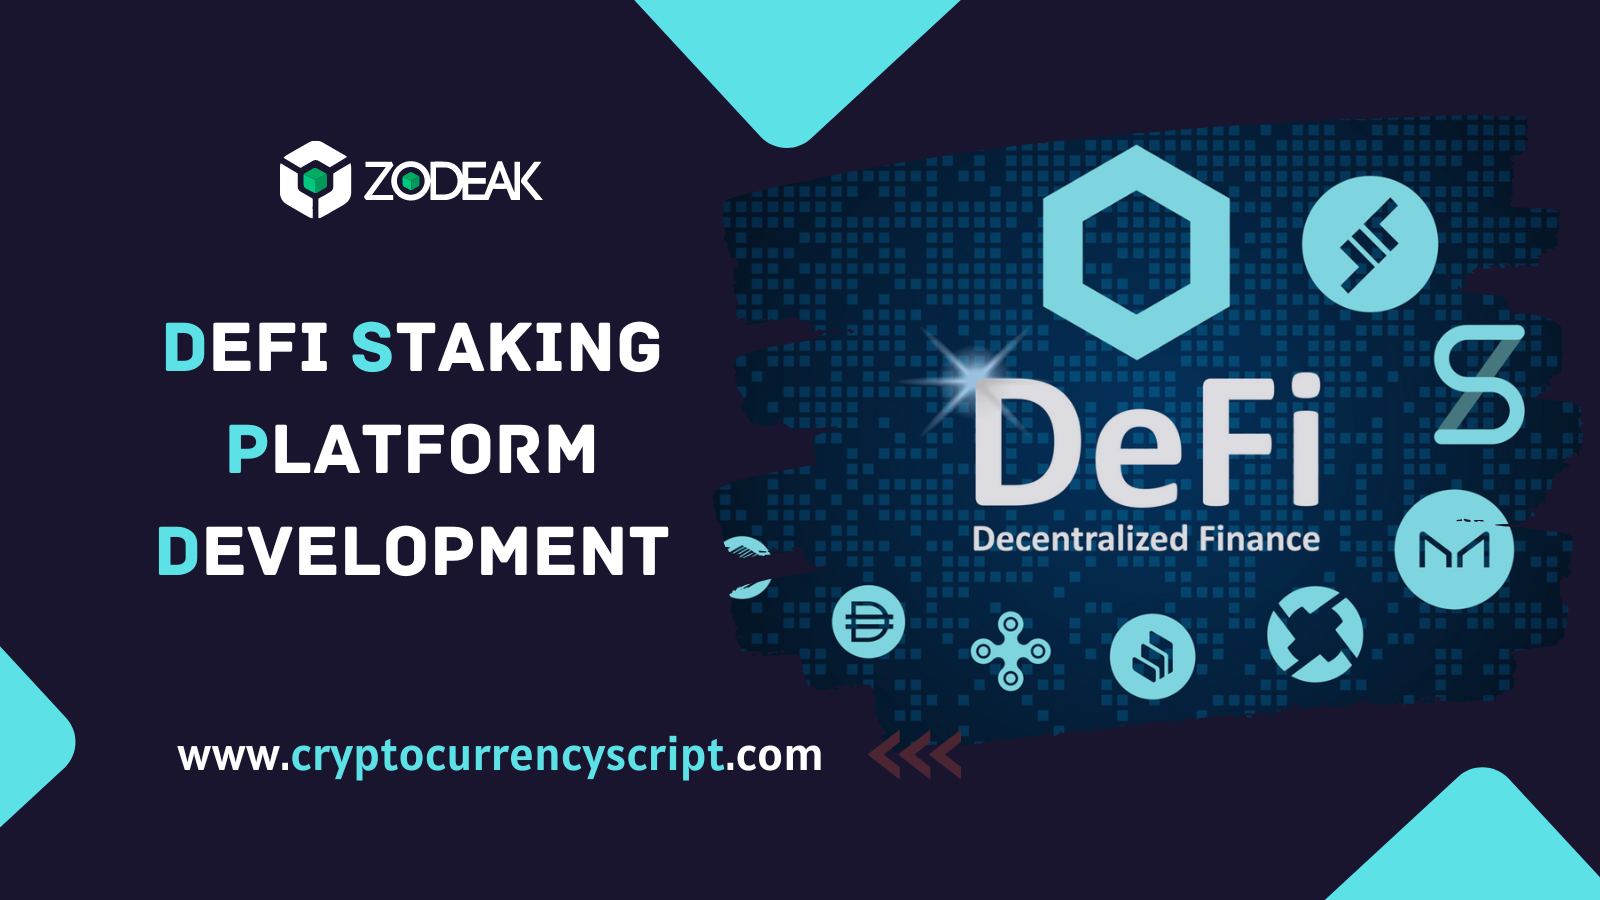 DeFi Staking Platform Development Services | Zodeak